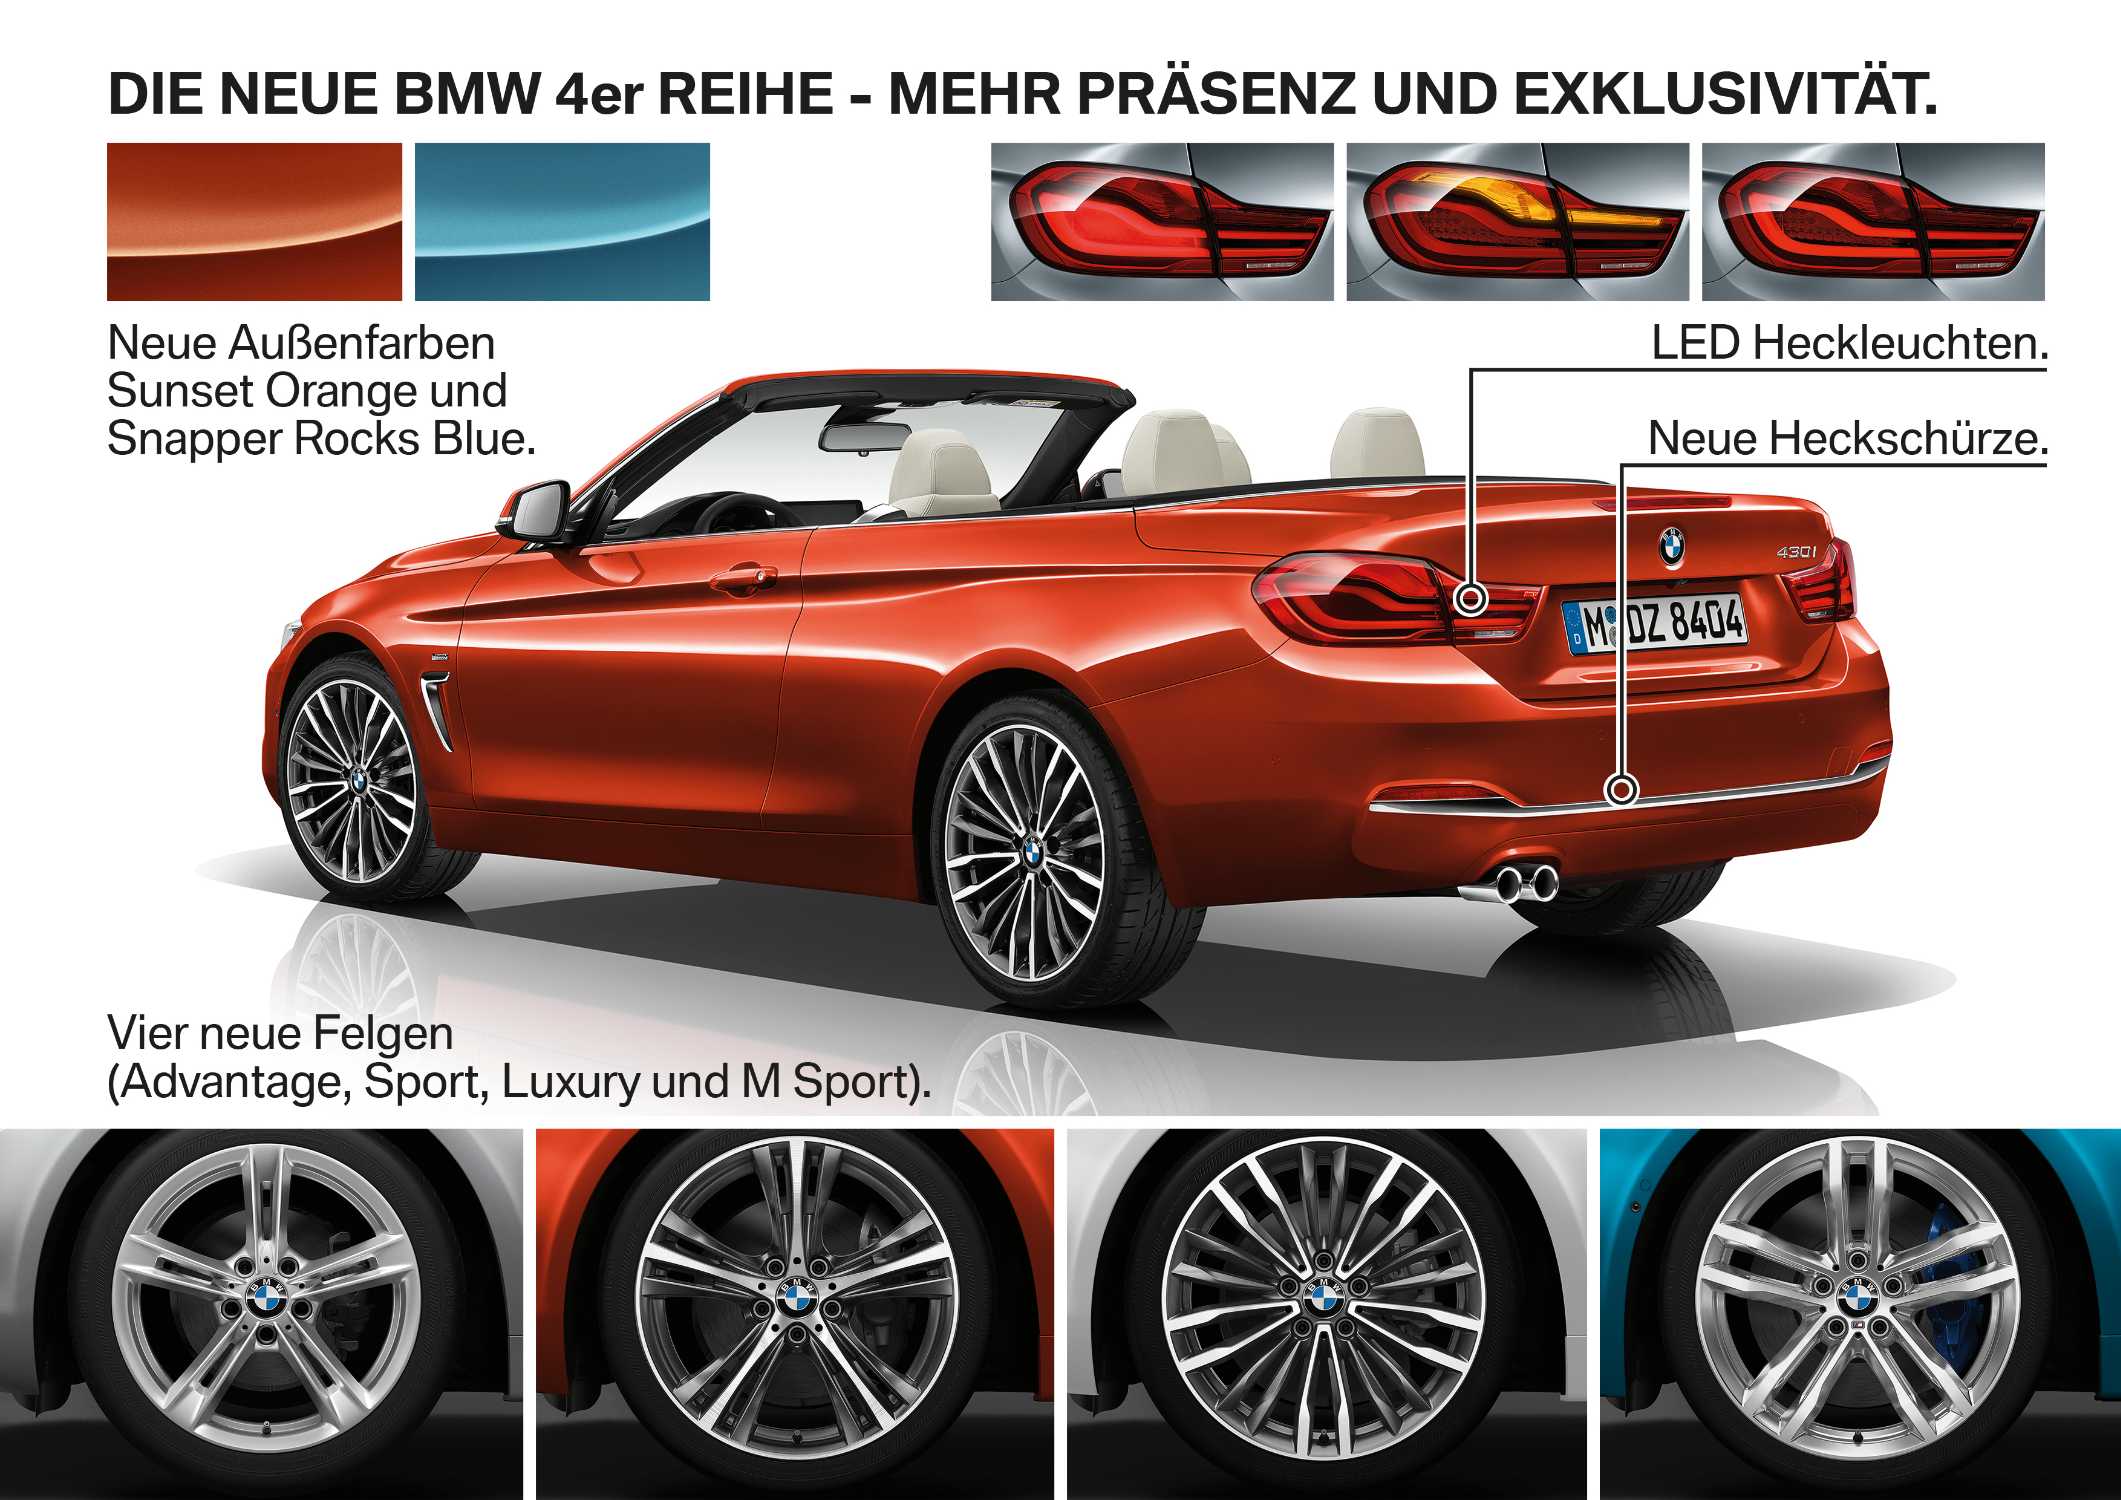 Die neue BMW 4er Reihe, Highlights (01/2017).